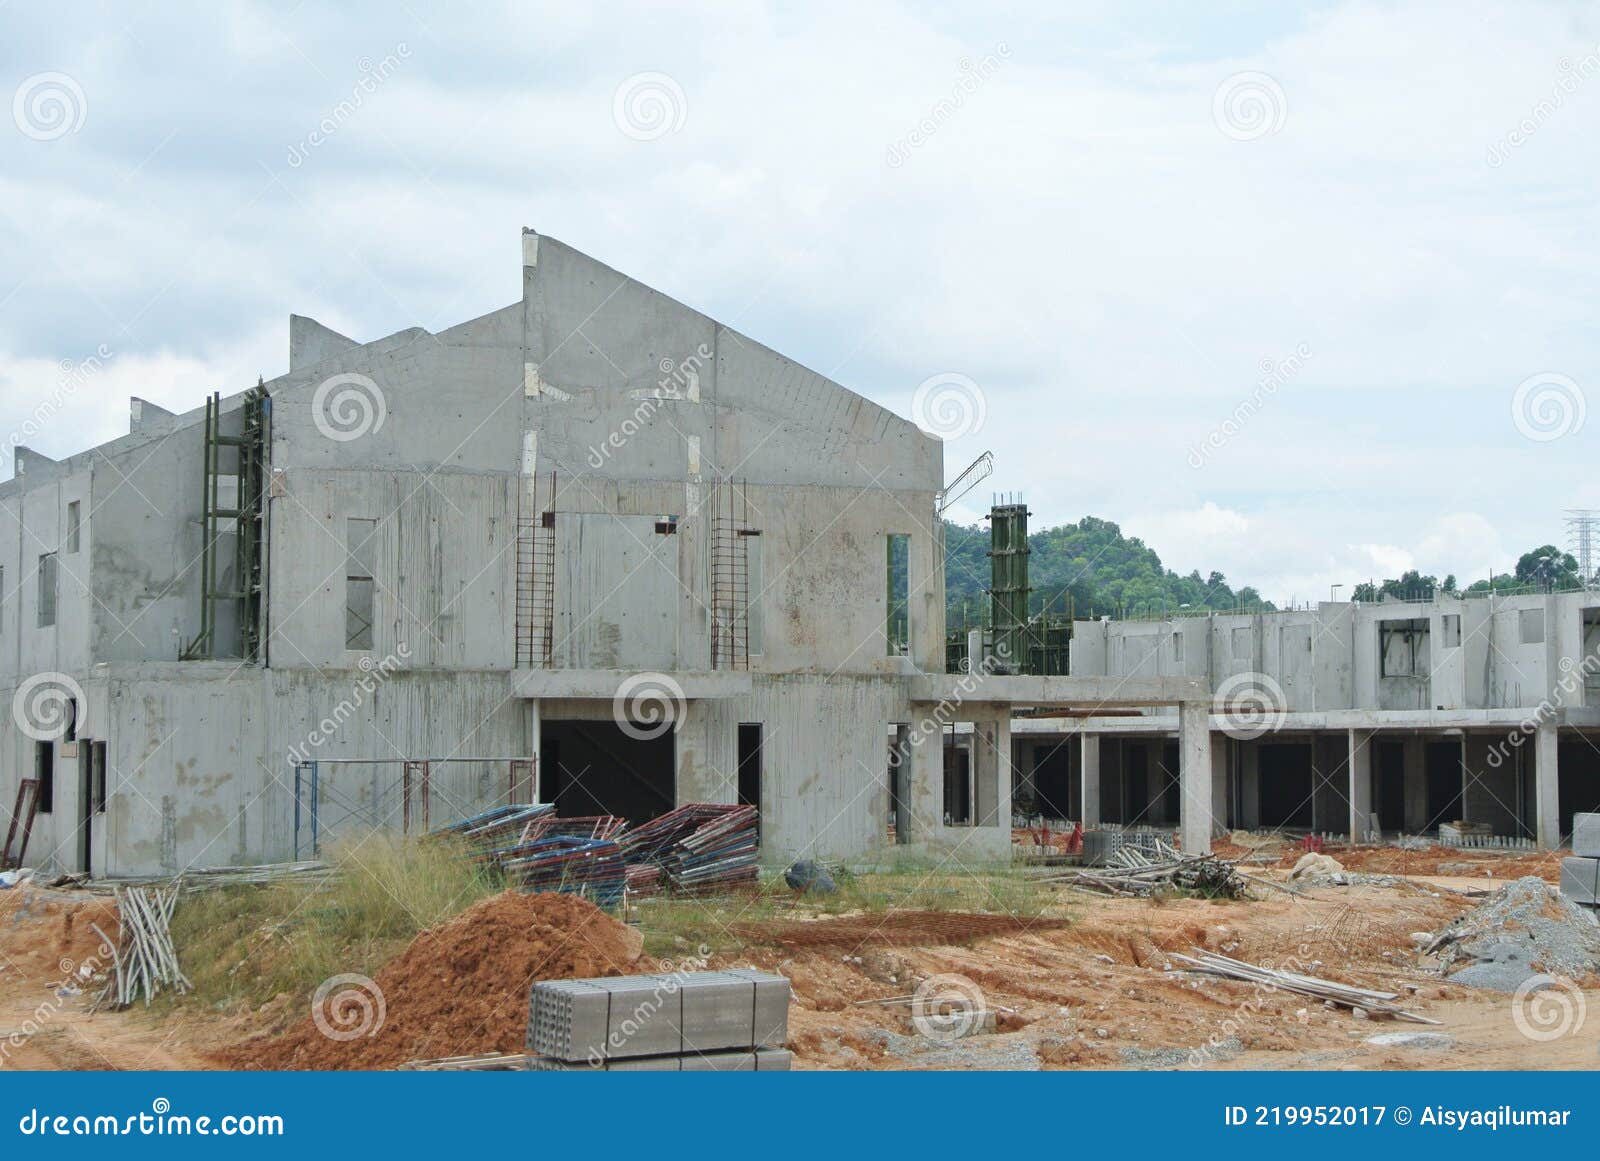 Nueva Casa De Lujo De Dos Plantas En Construcción En Malasia. Fotografía  editorial - Imagen de grupo, lujo: 219952017